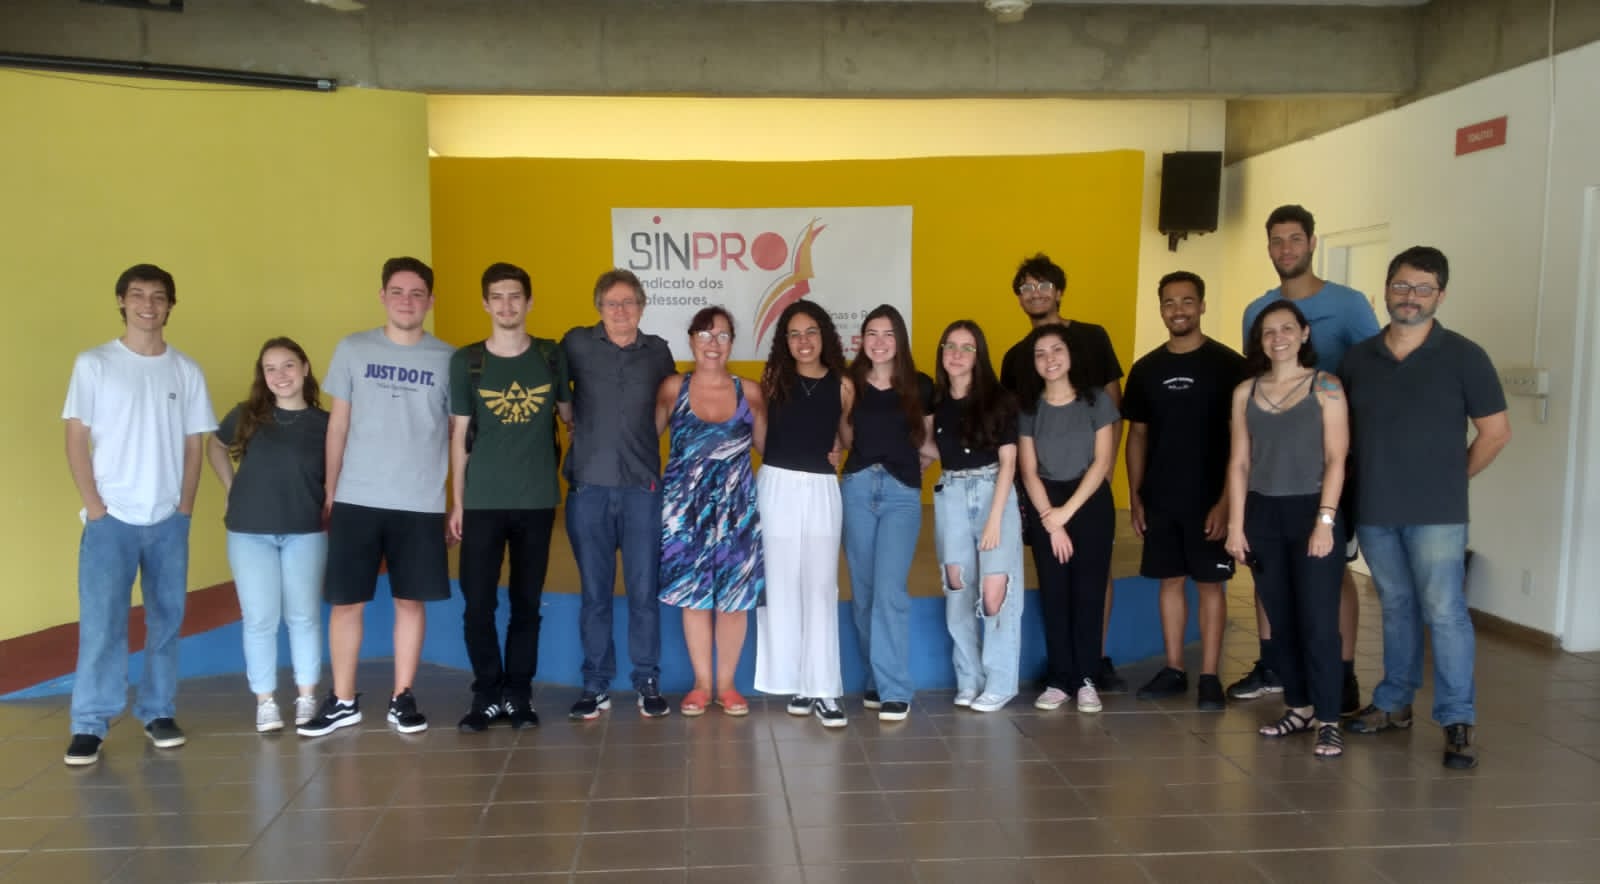 Sinpro Campinas e Região e CESIT da Unicamp celebram parceria